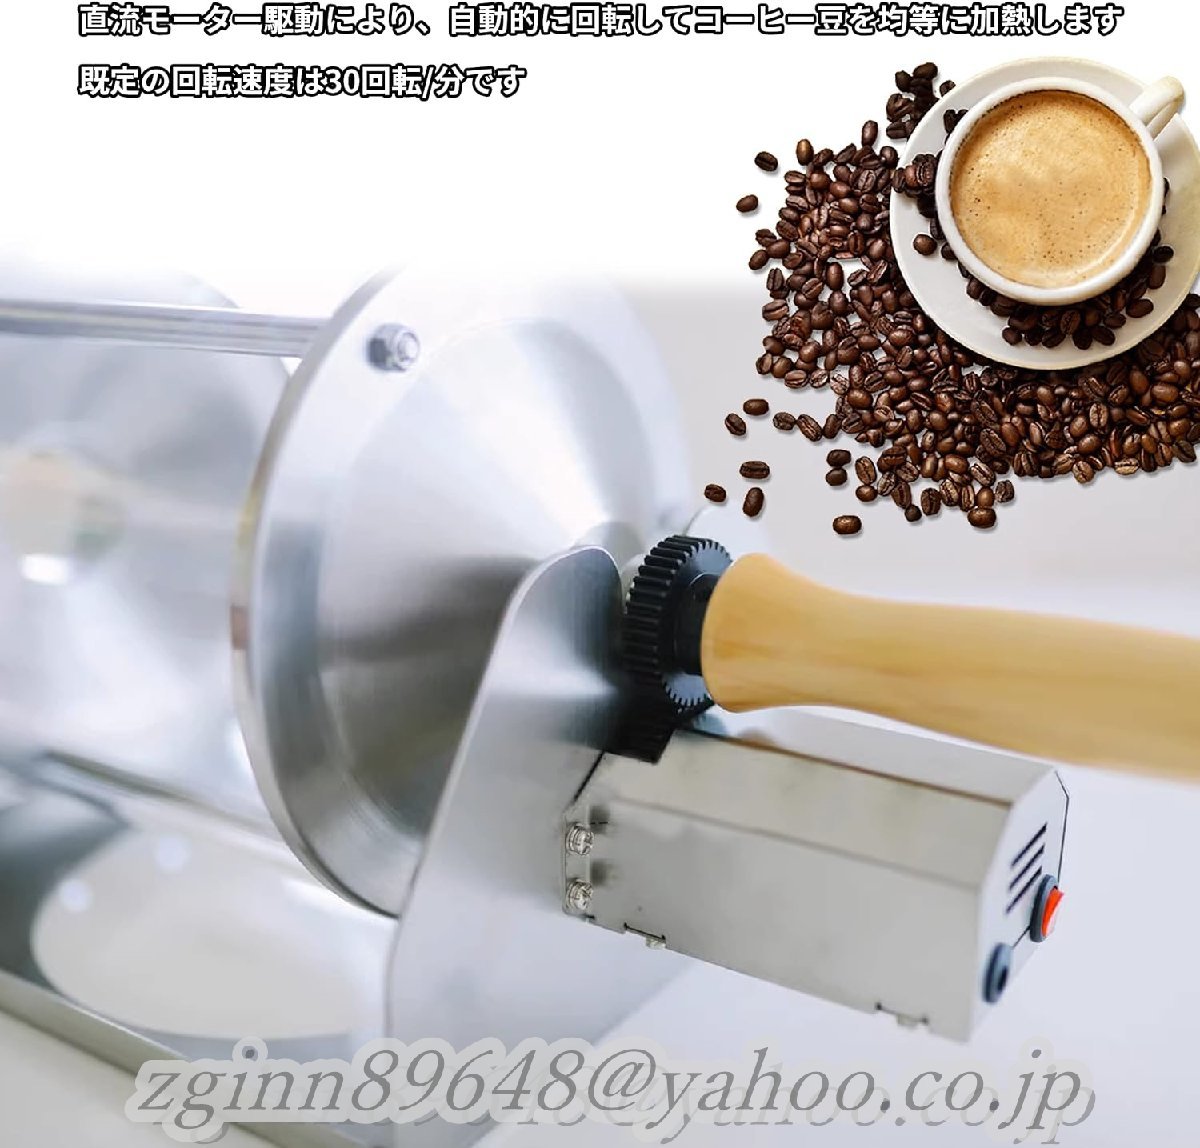 コーヒー焙煎機 Coffee-04 コーヒー 直火式 透明 焙煎器 ロースター コーヒー豆ロースター 業務用 家庭用 コーヒー焙煎器_画像4